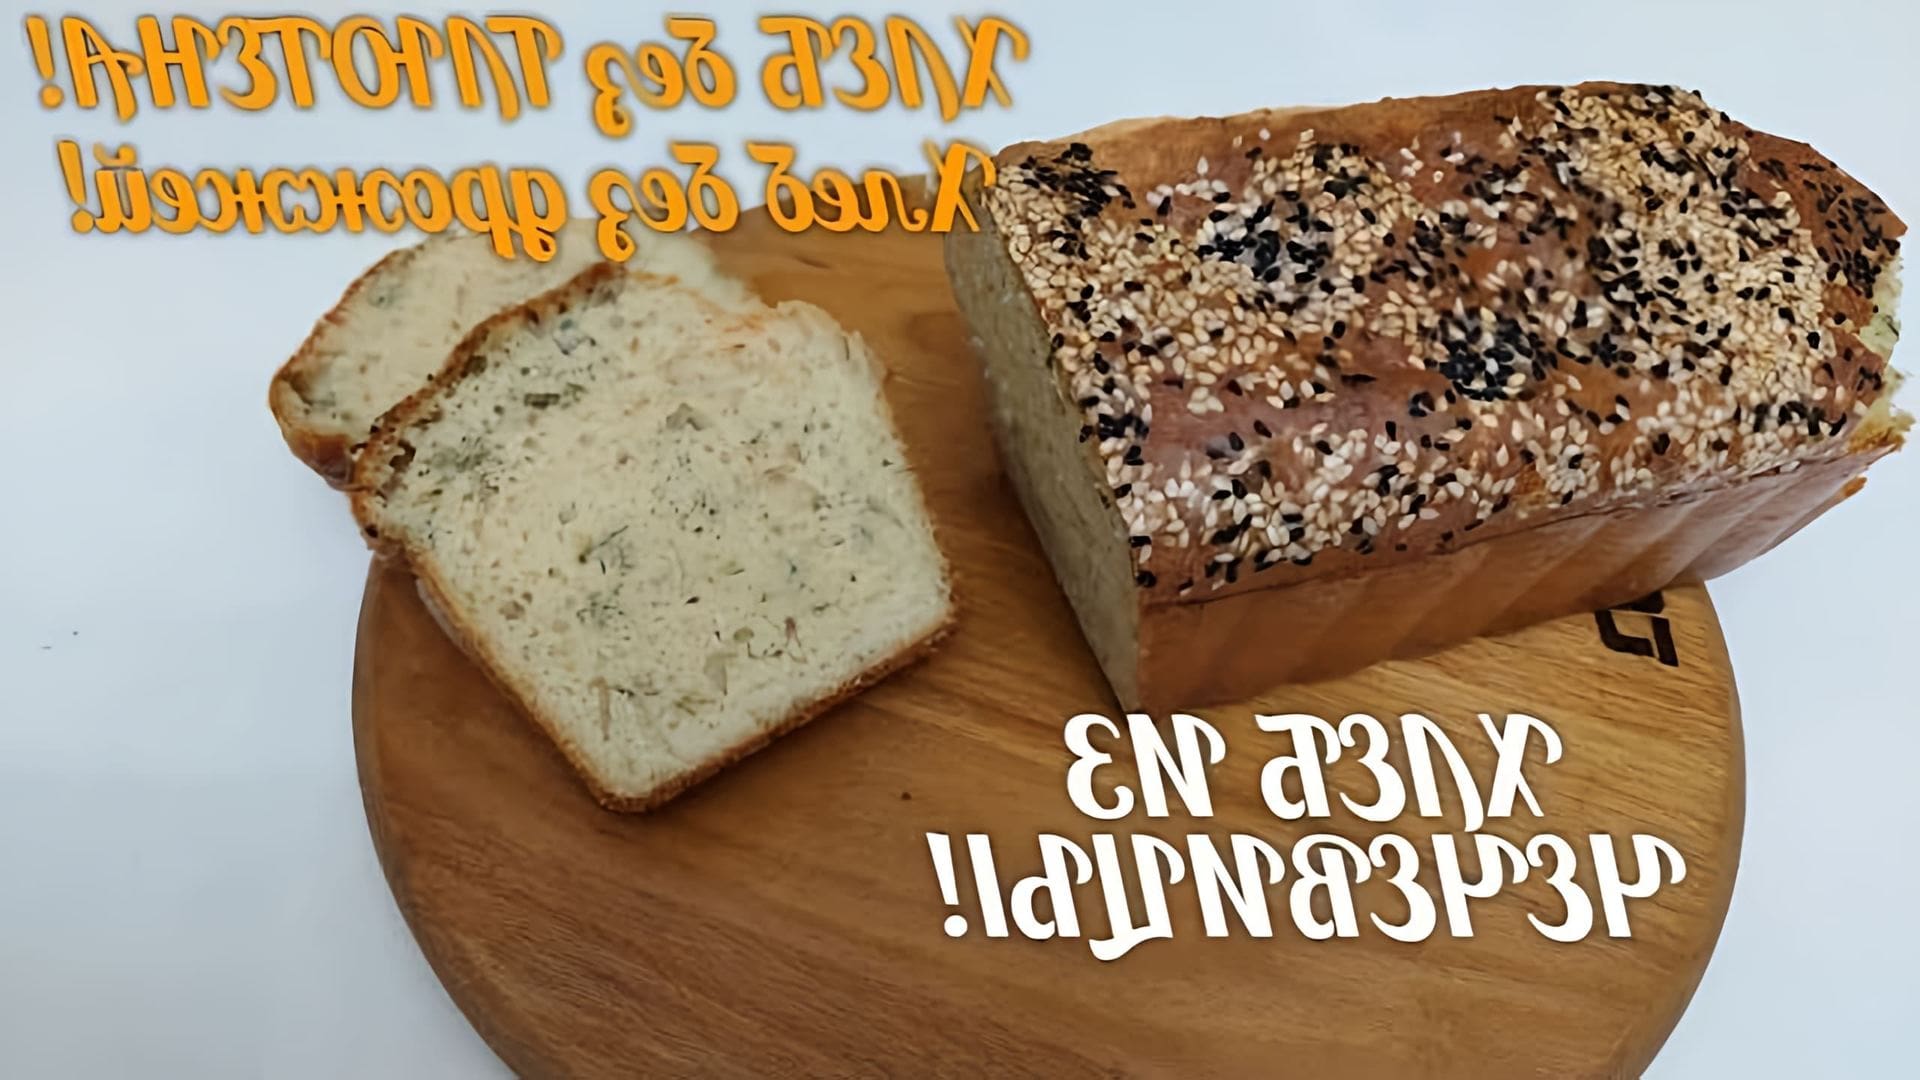 В данном видео демонстрируется рецепт безглютенового хлеба из чечевицы